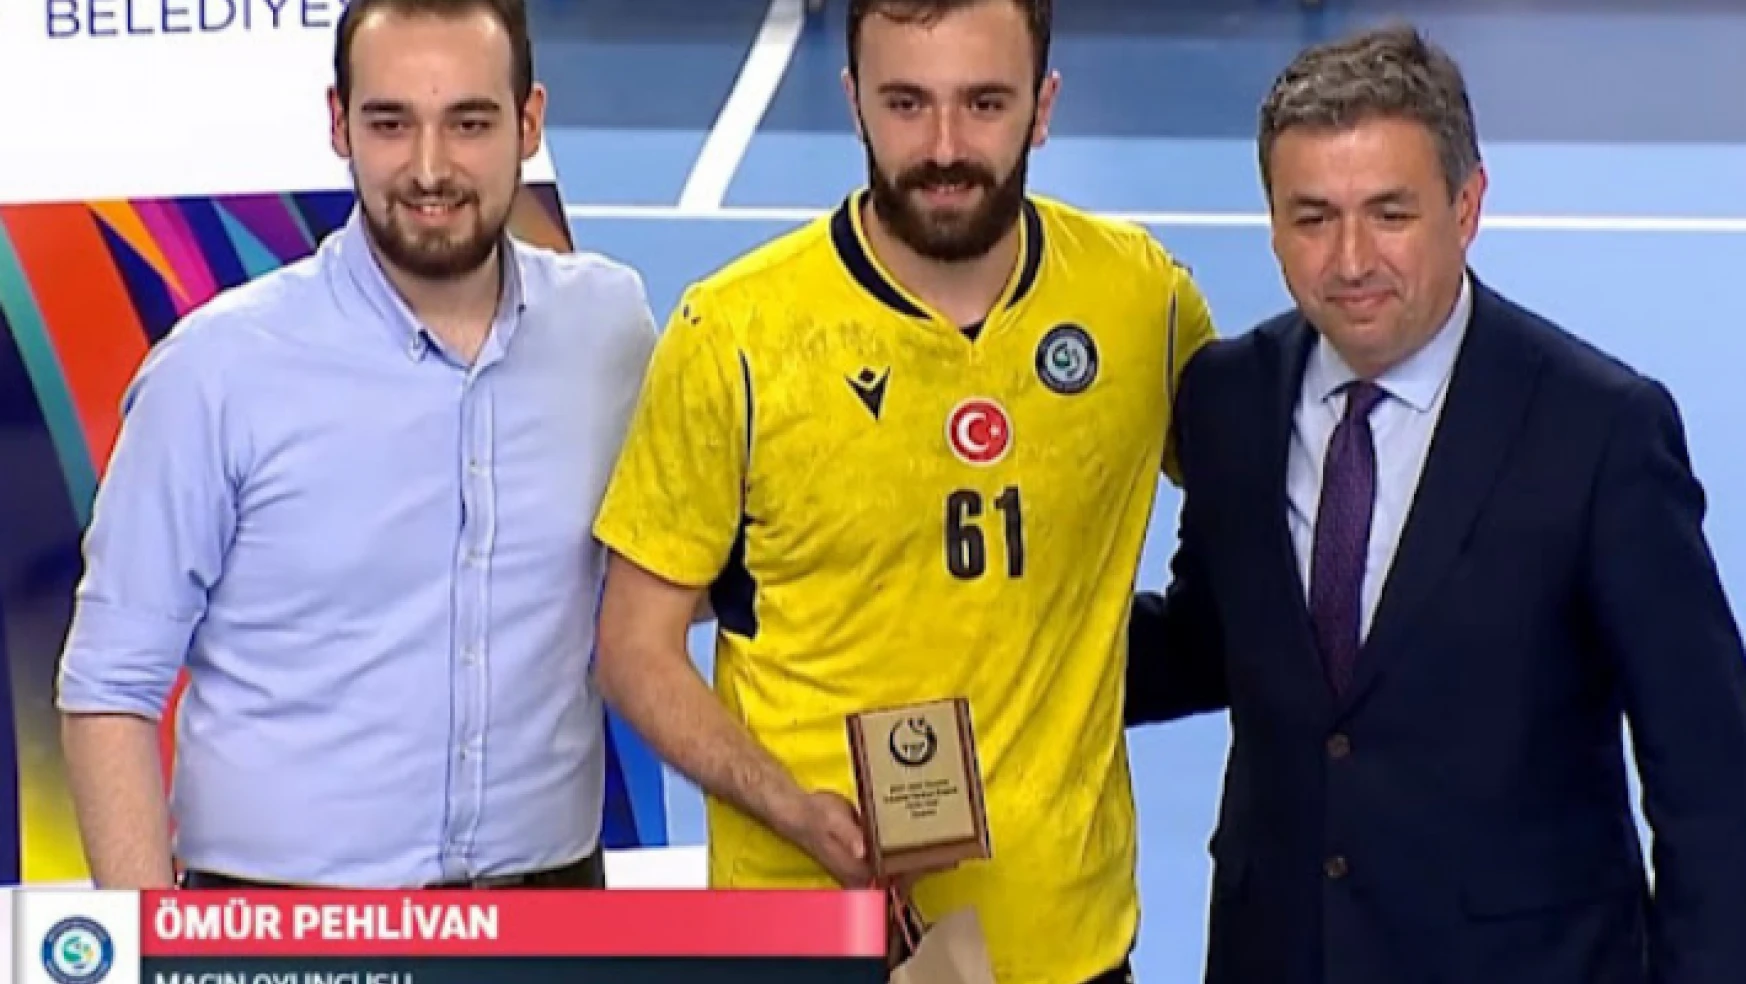 MVP Ömür Pehlivan: “Hak ettik”